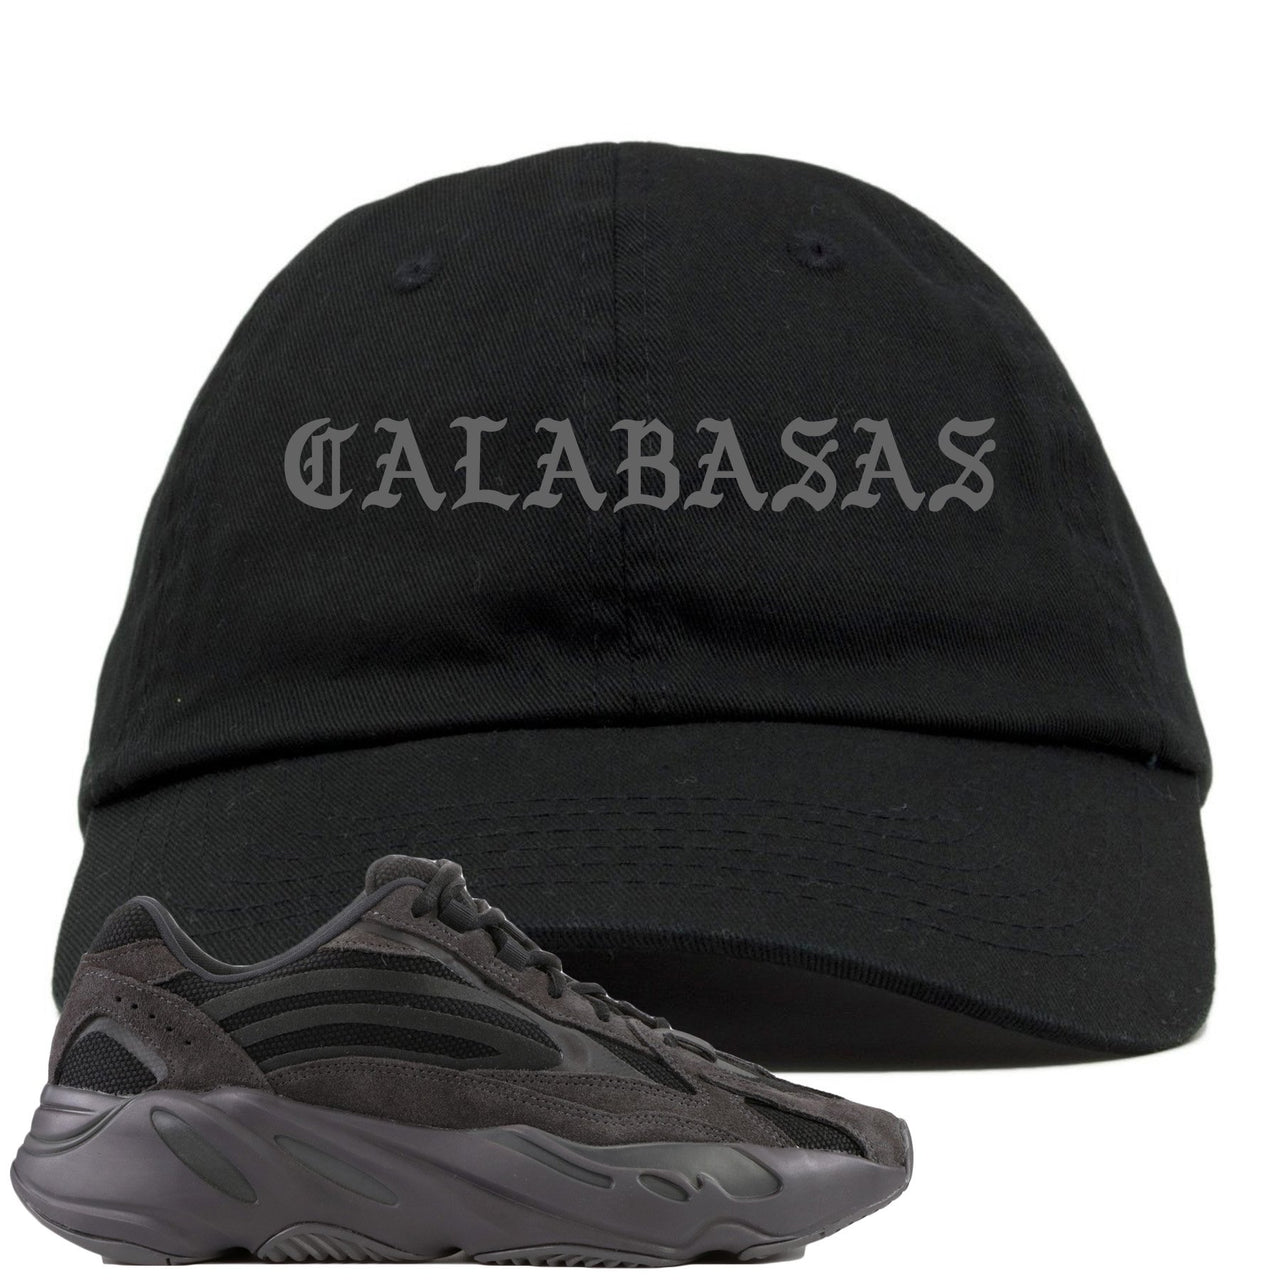 Vanta v2 700s Dad Hat | Calabasas, Black